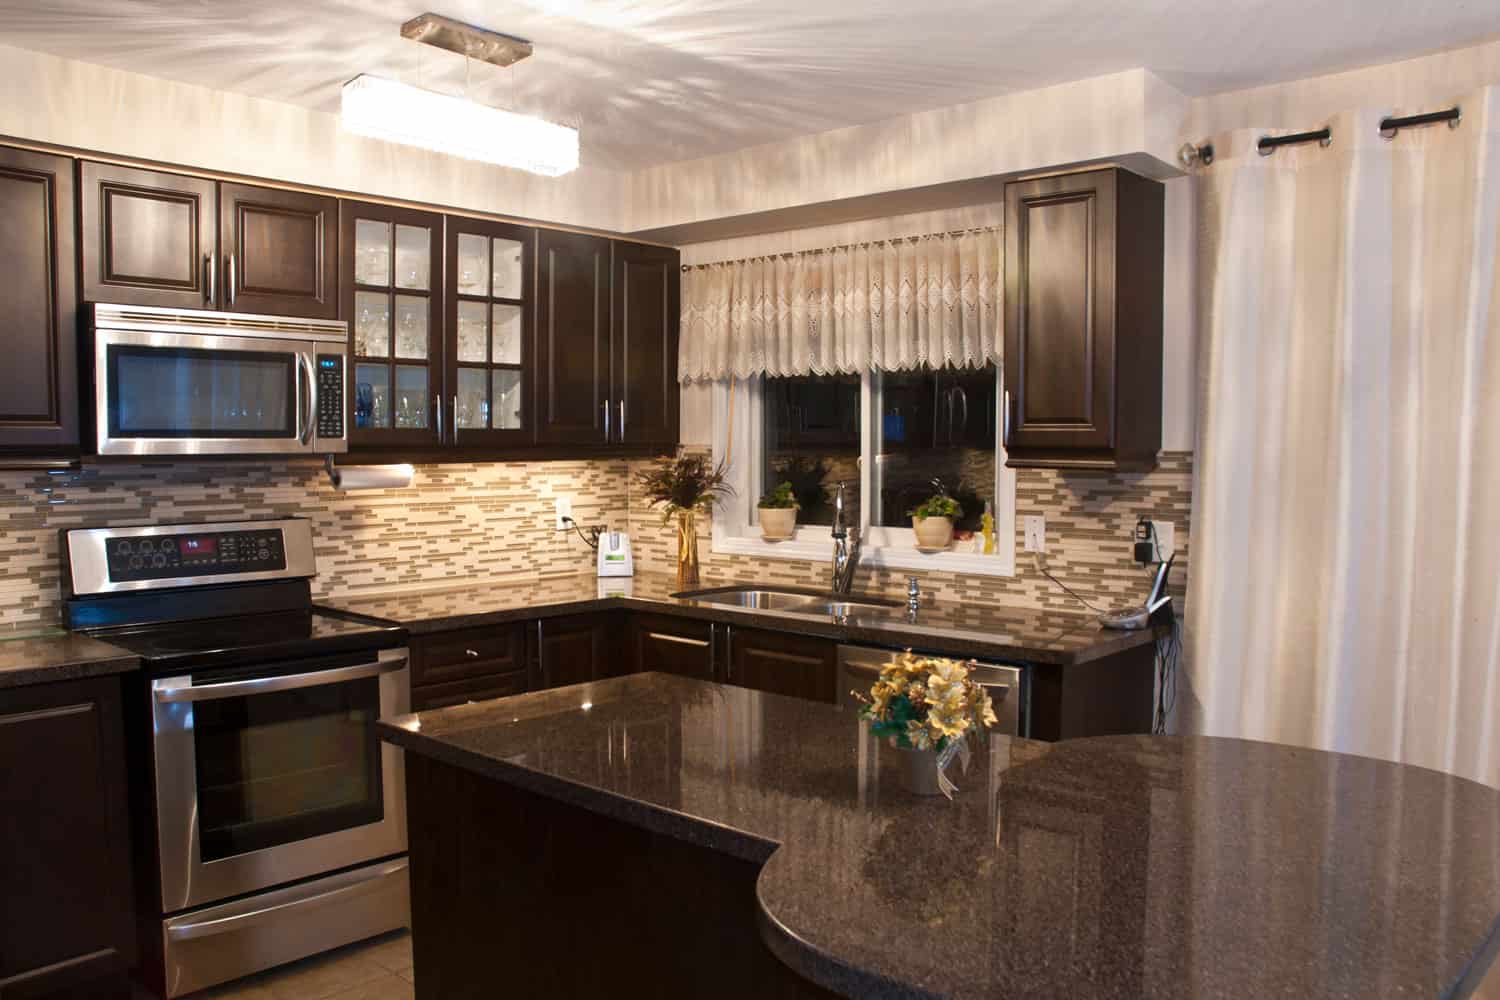 Dark choco luxury type kitchen cabinet with modern kitchen design